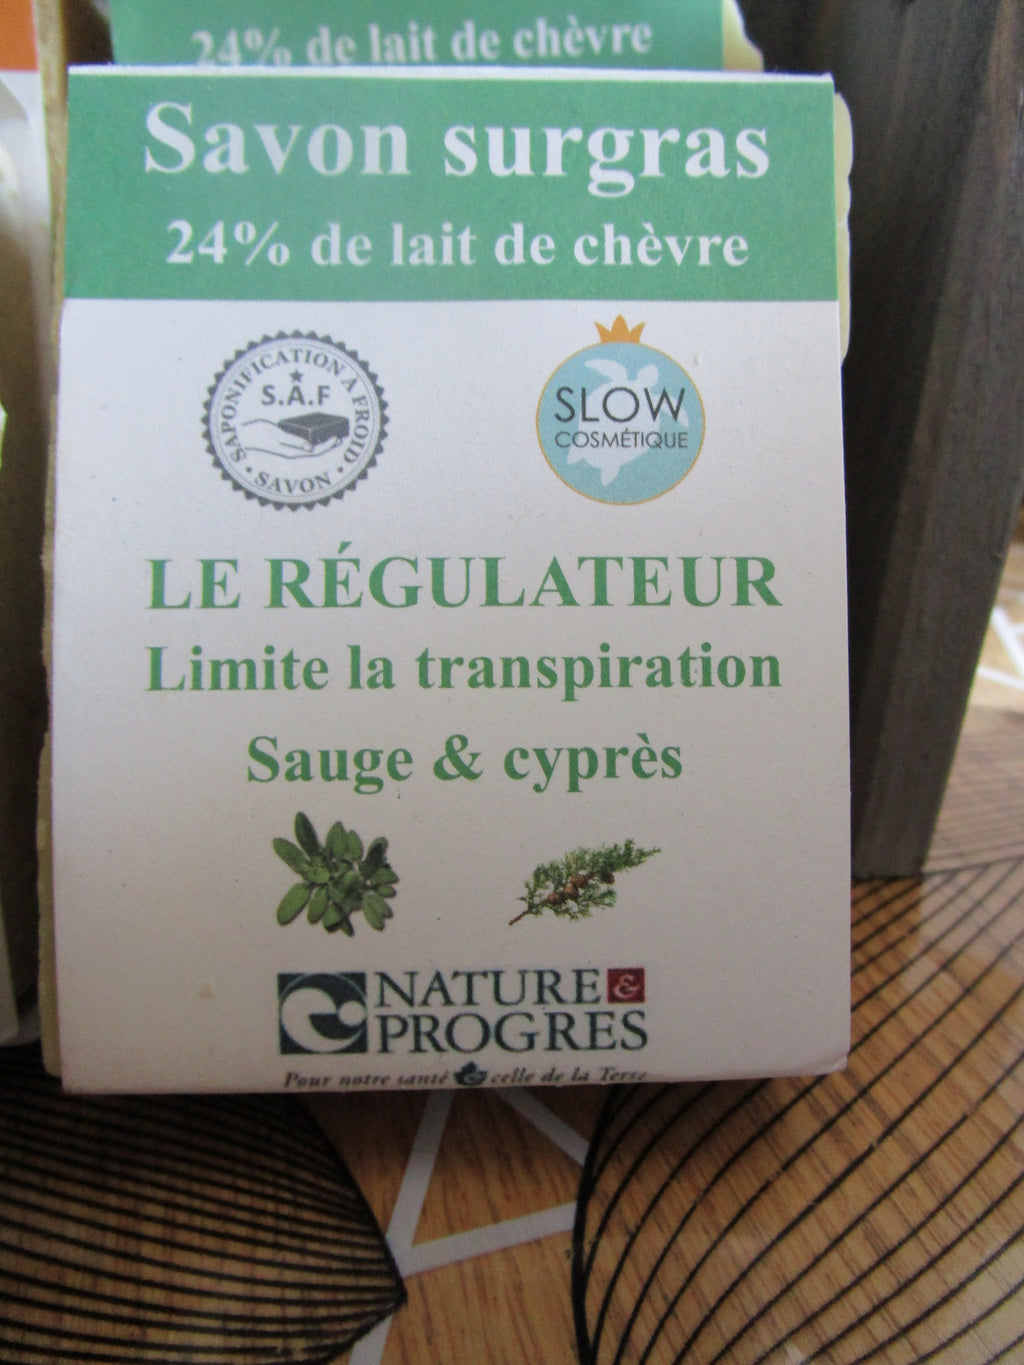 Savon surgras à la Sauge & Cyprès. Savon qui limite la transpiration. Bio et labellisé Nature & Progrès. Savon au lait de chèvre.